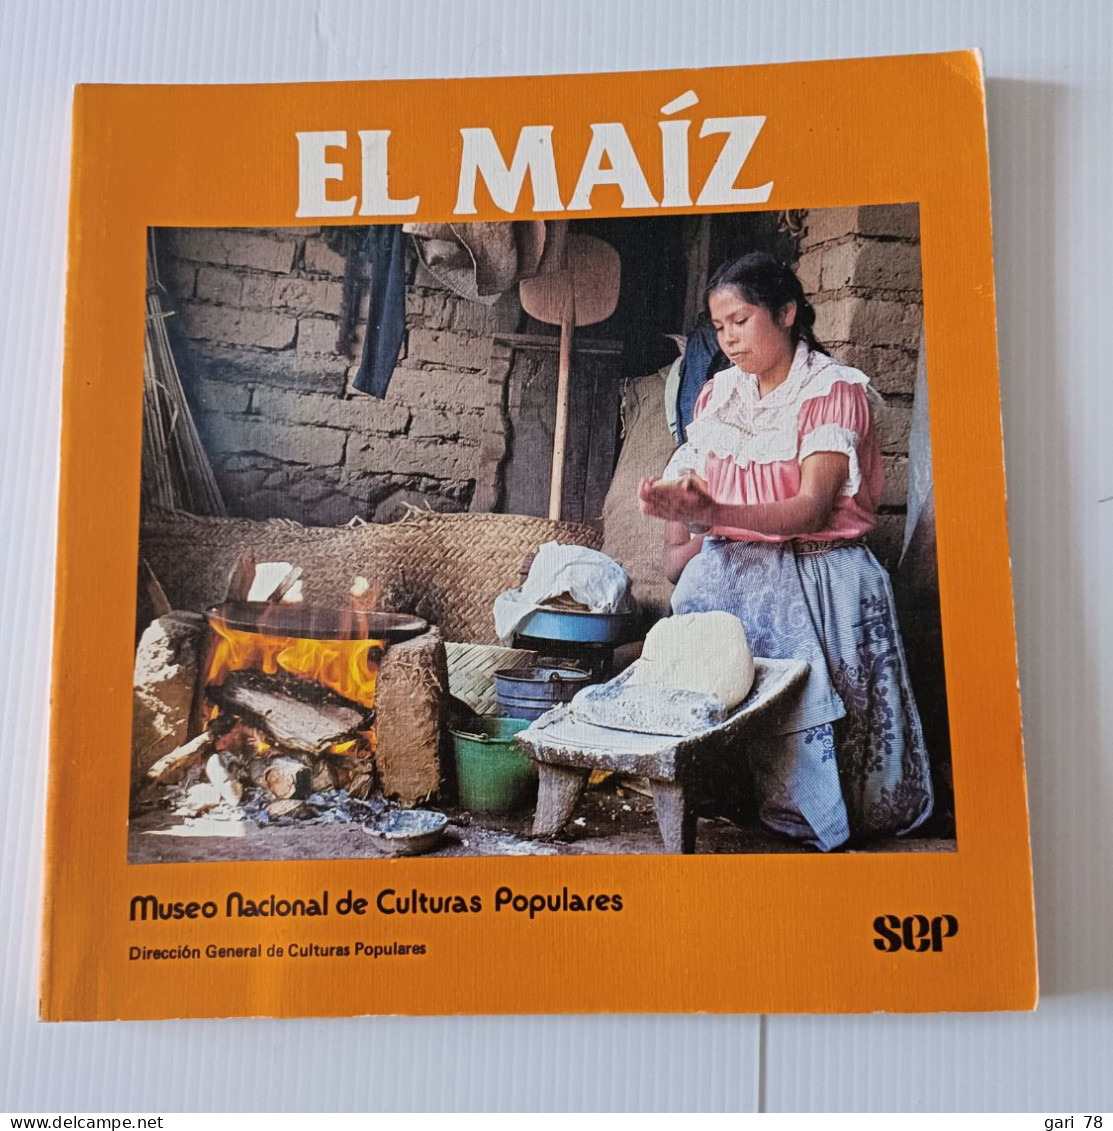 EL MAIZ, Fundamento De La Cultura Popular Mexicana - Museo Nacional De Culturas Populares - Cultural